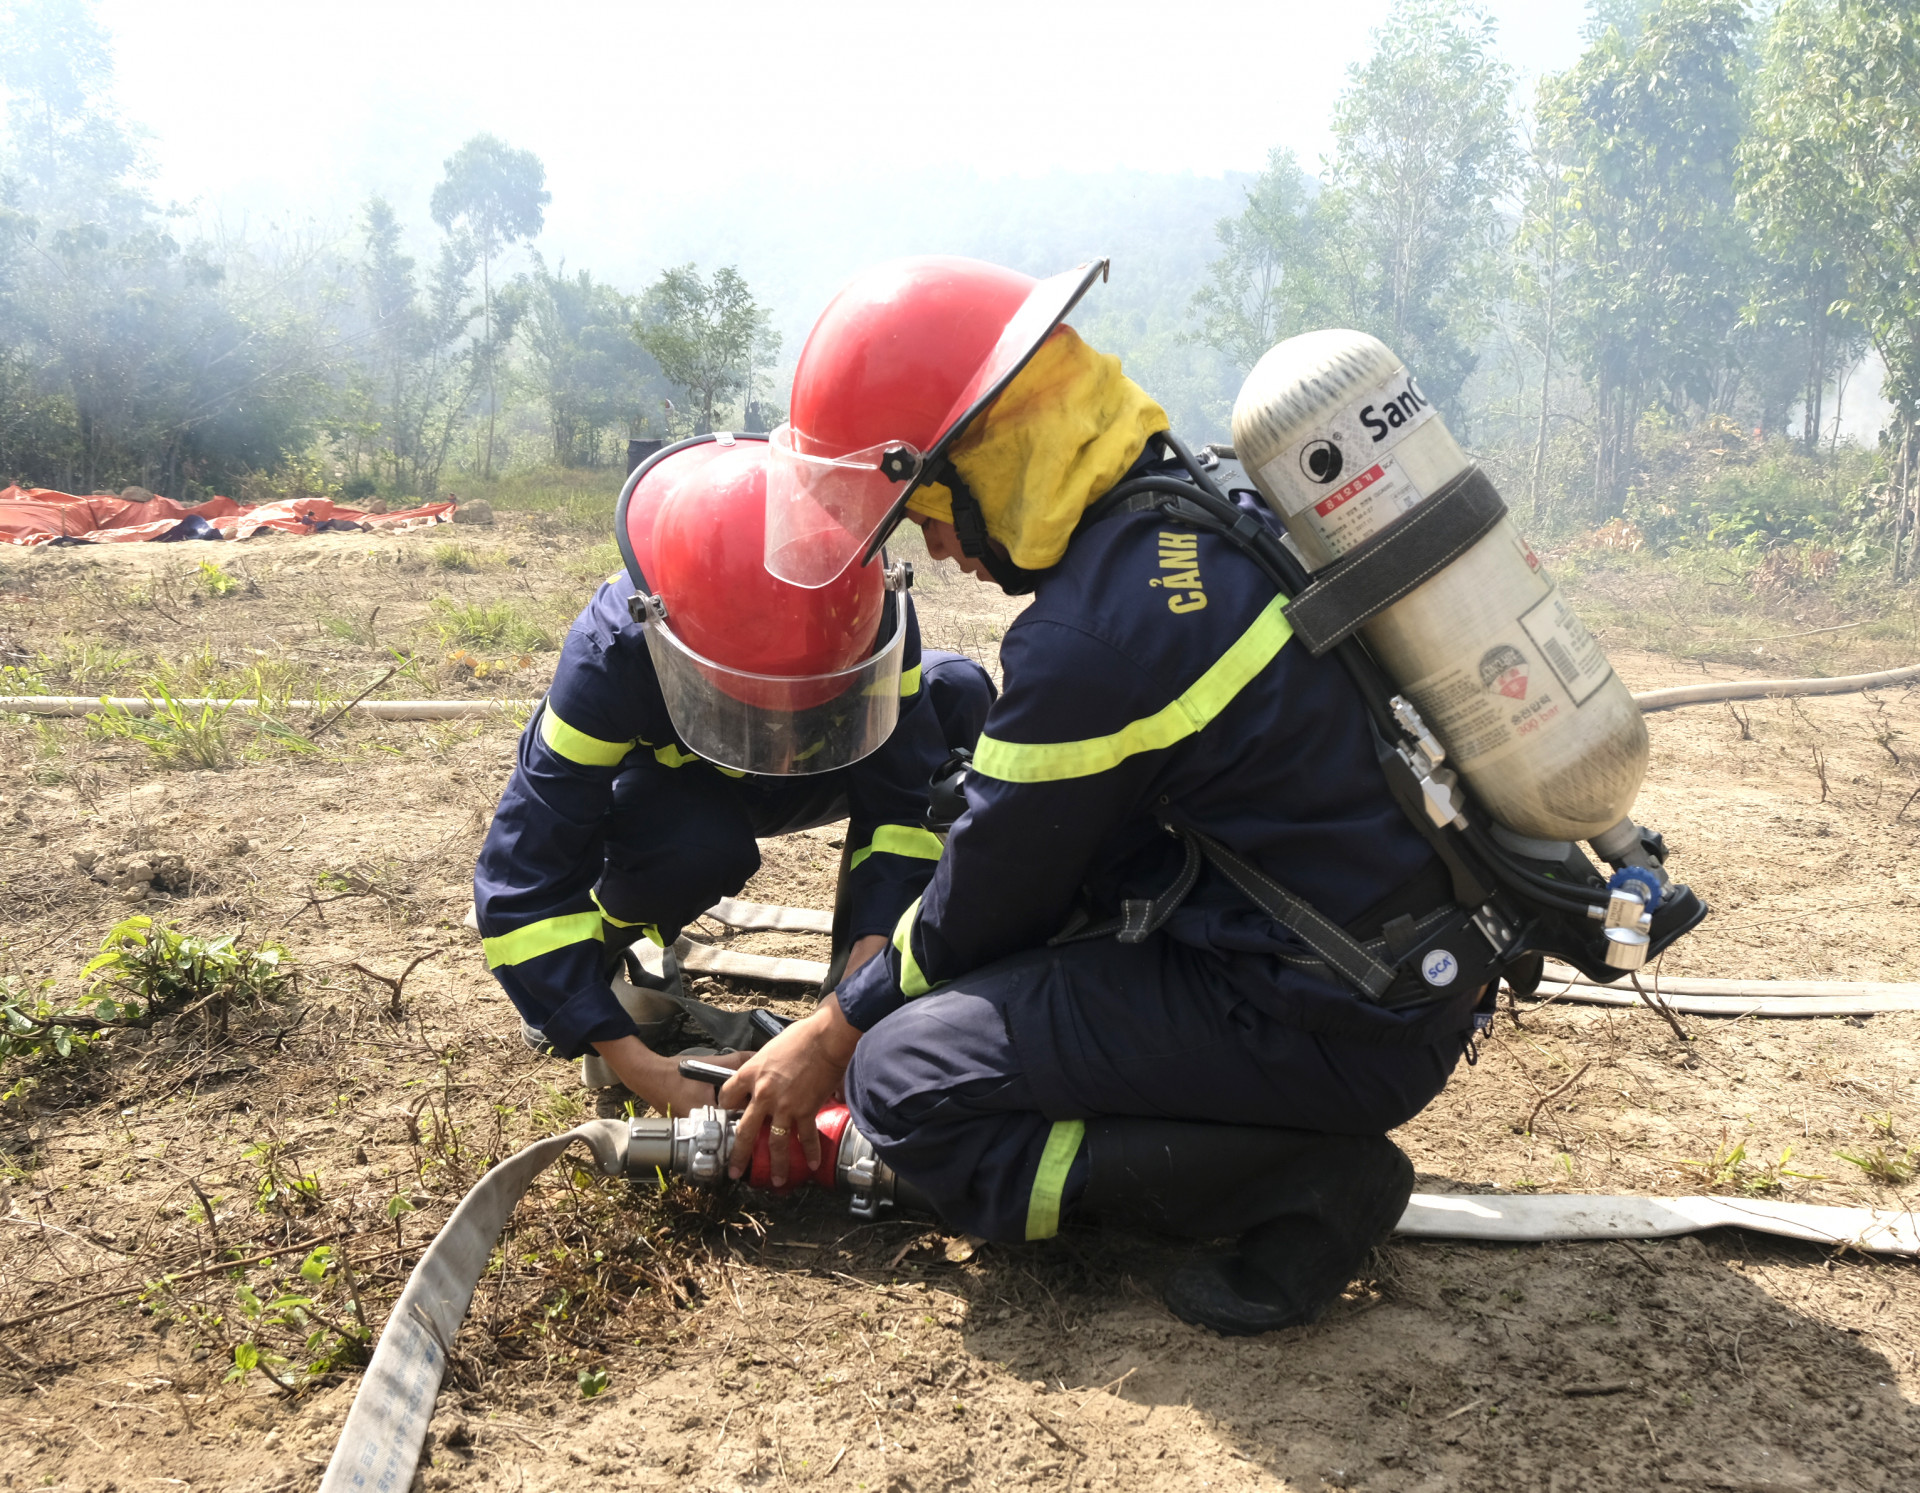 Lực lượng cảnh sát phòng cháy chữa cháy và Cứu hộ cứu nạn cơ động đến hiện trường tham gia chữa cháy rừng